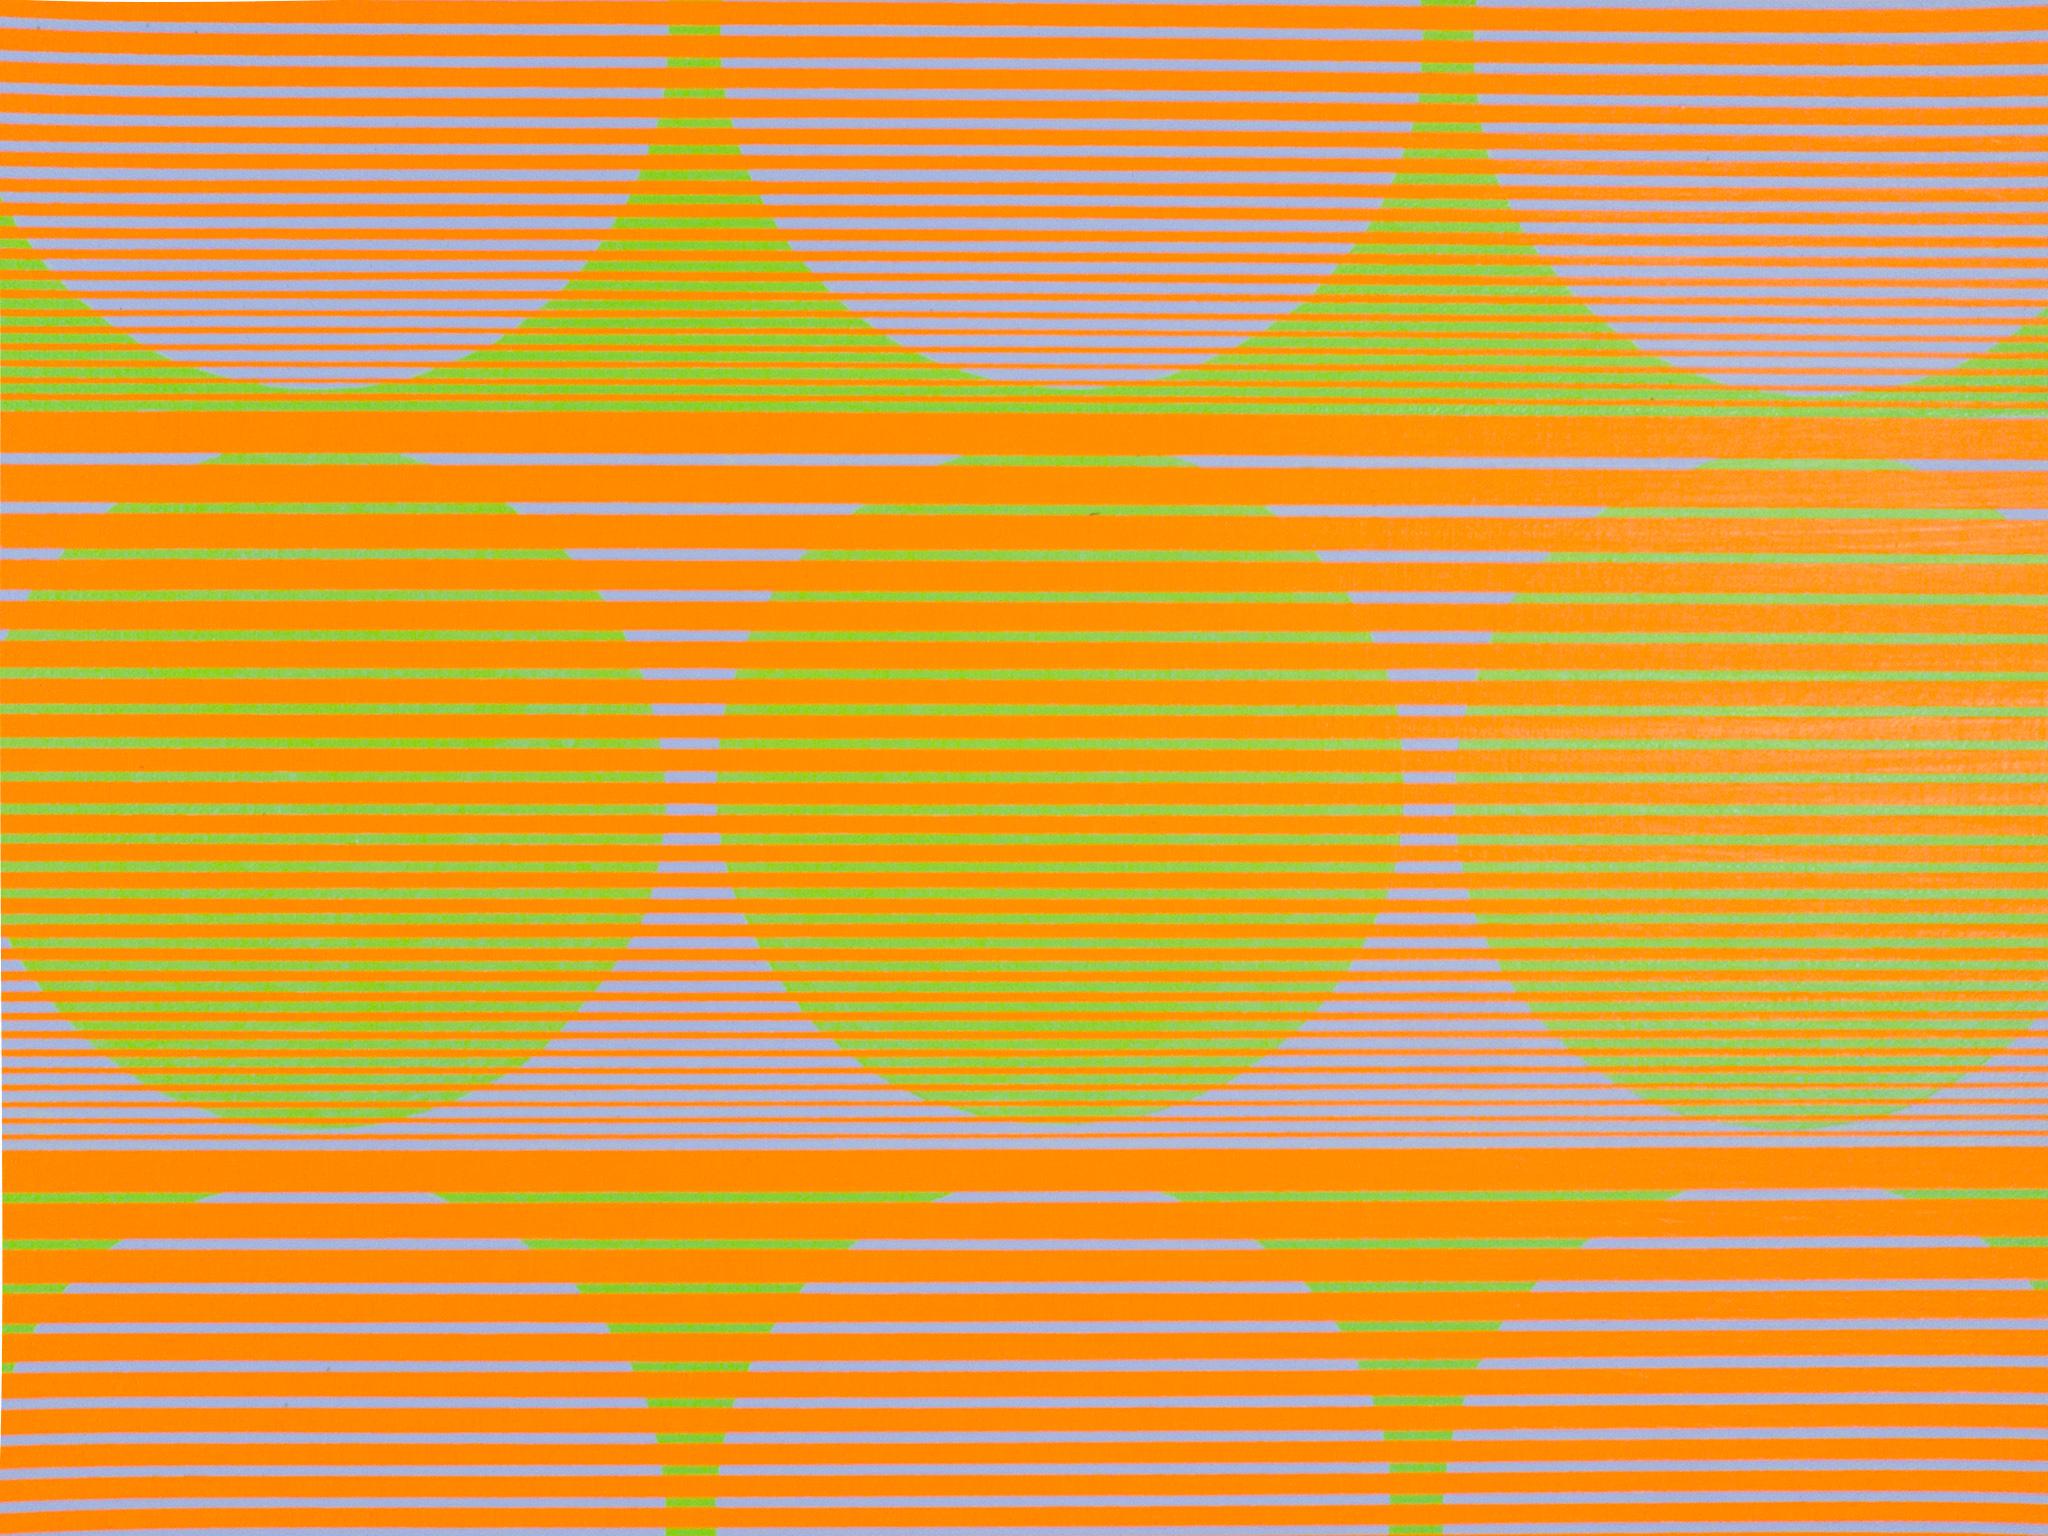 Reihen, 1970, von Julian Stanczak (1928-2017)
Acryl auf Leinwand
27 ¼ x 27 ¼ Zoll ungerahmt (69,215 x 69,215 cm)
28 ½ x 28 ½ Zoll gerahmt (72,39 x 72,39 cm)
Signiert auf der Rückseite
Rückseitig auf dem Keilrahmen datiert und beschriftet